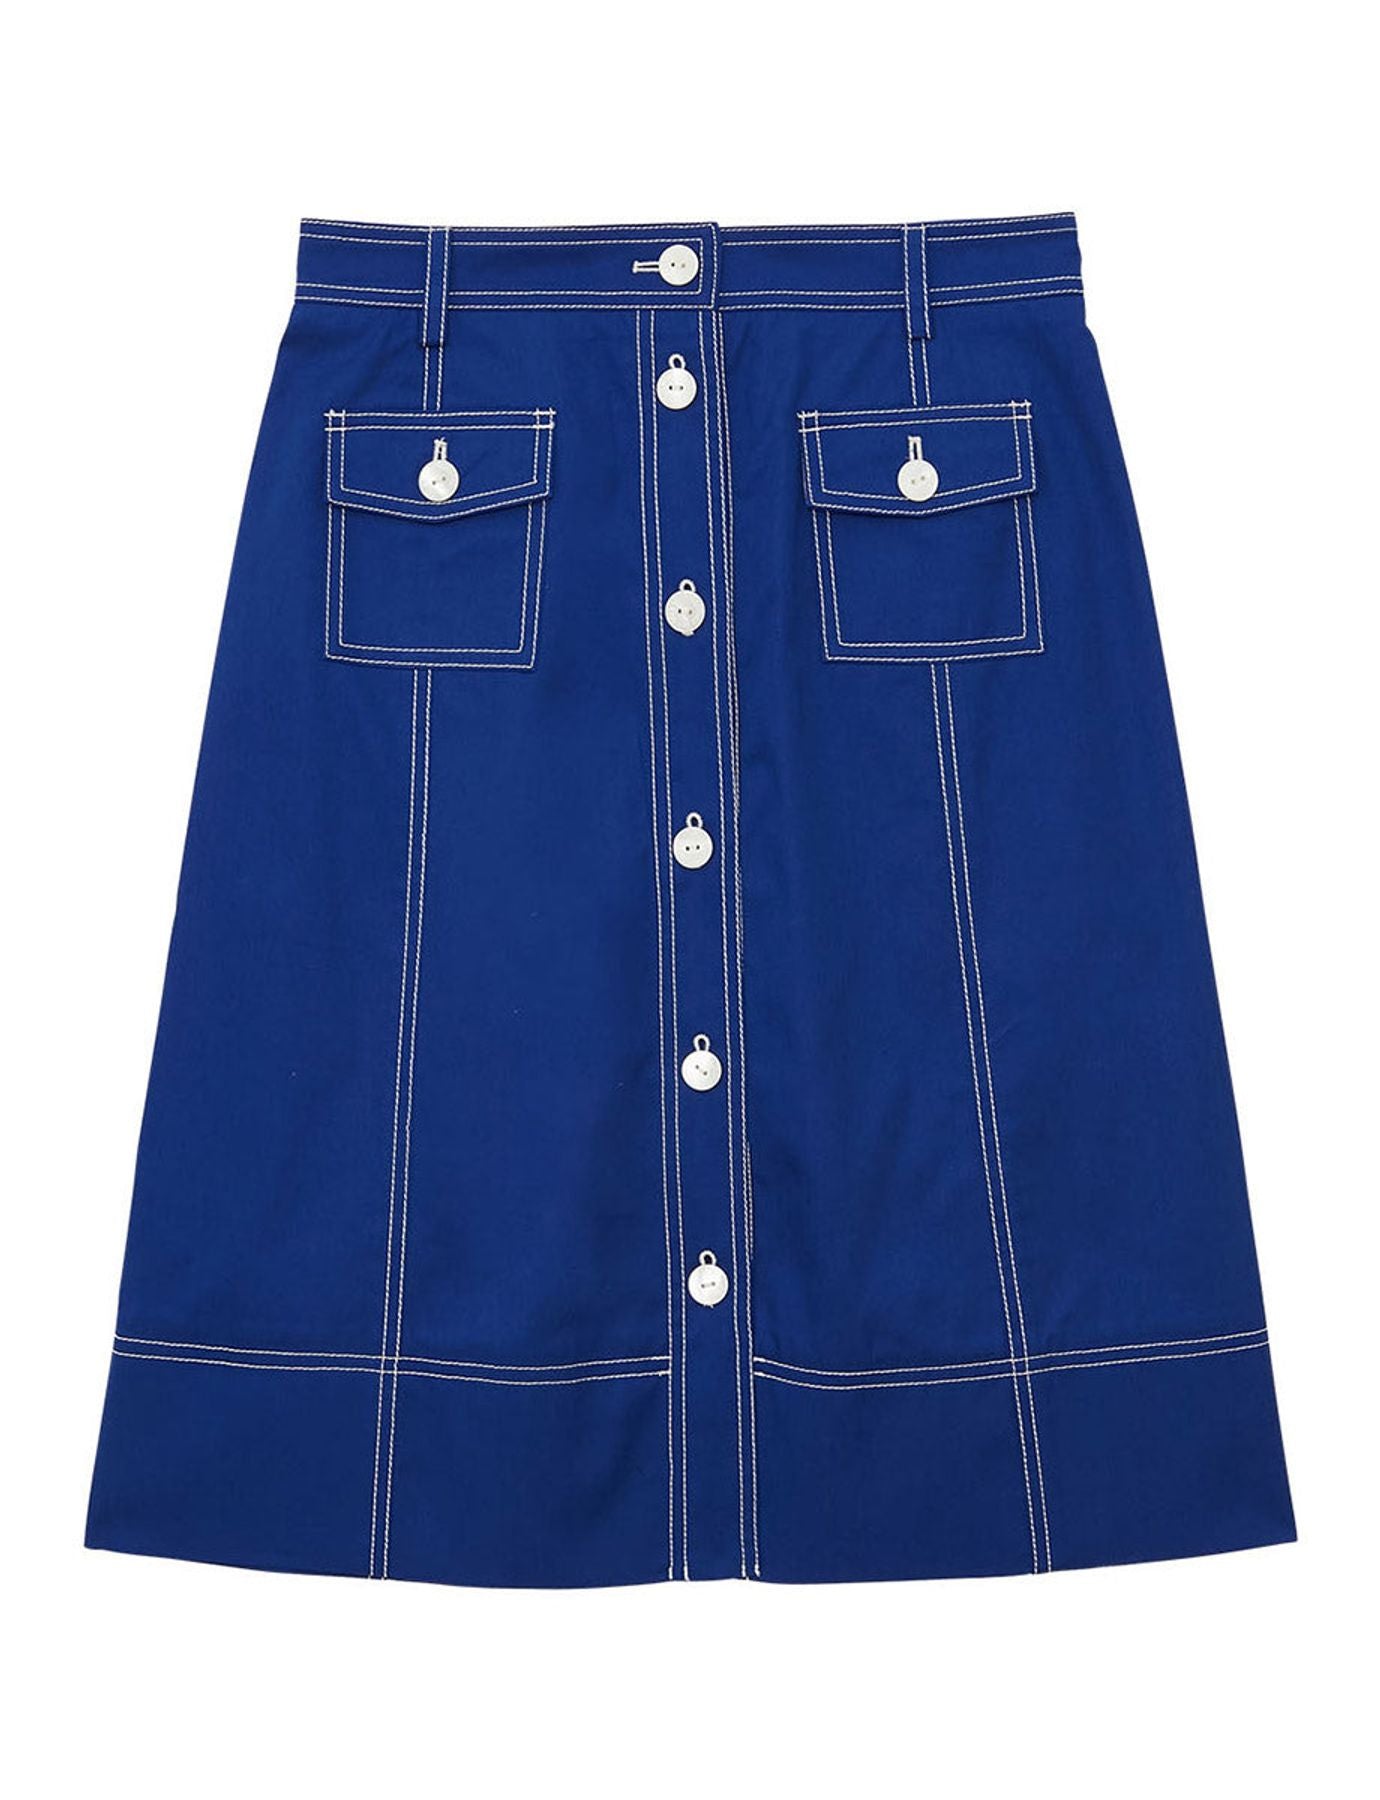 skirt-rachel-blue